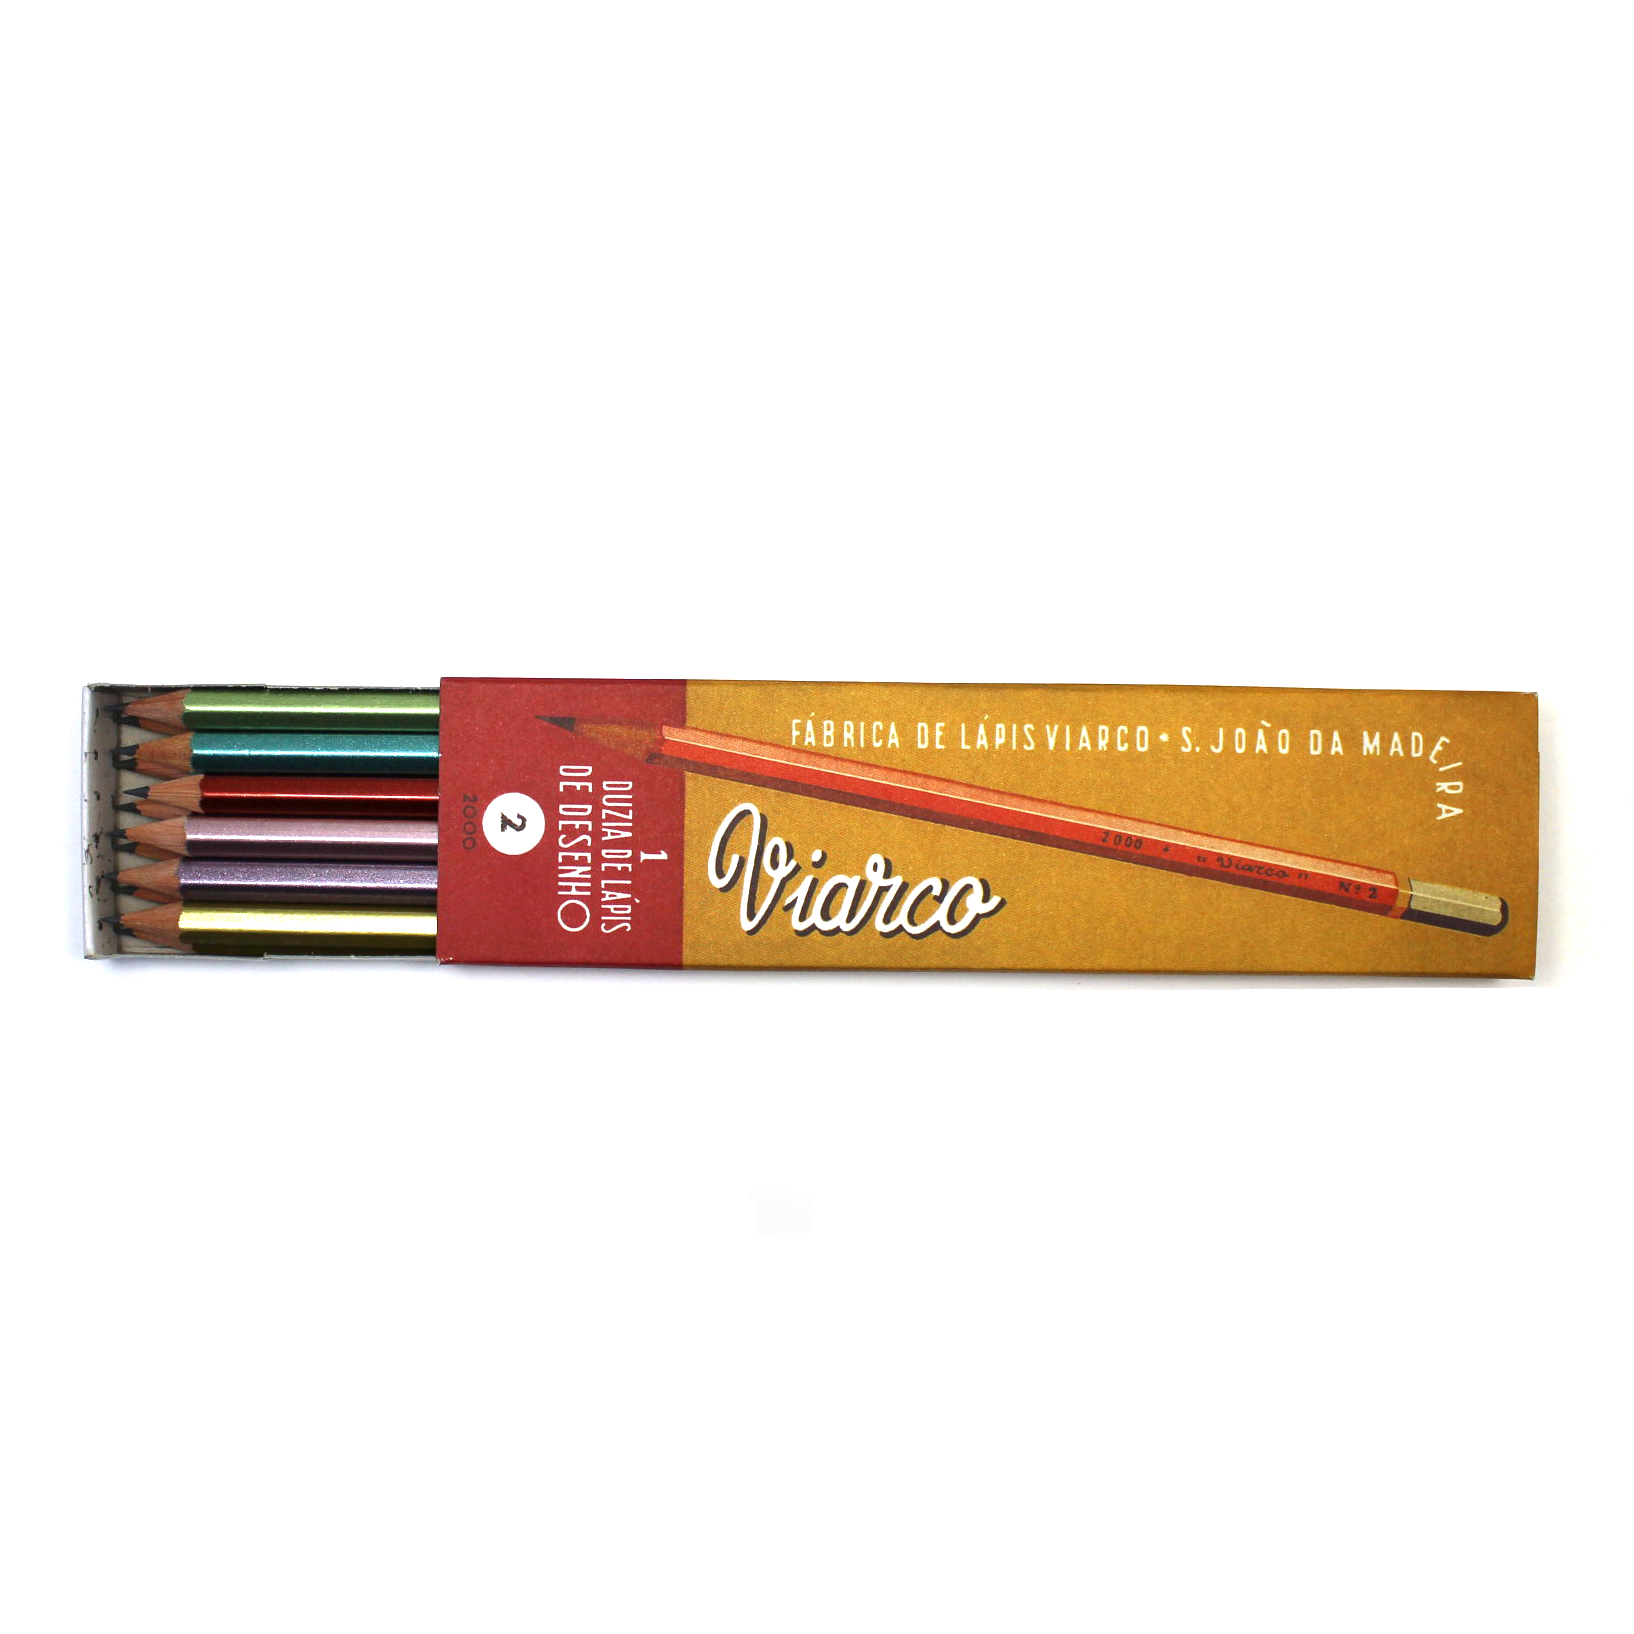 Vintage Viarco 2000 Pencils